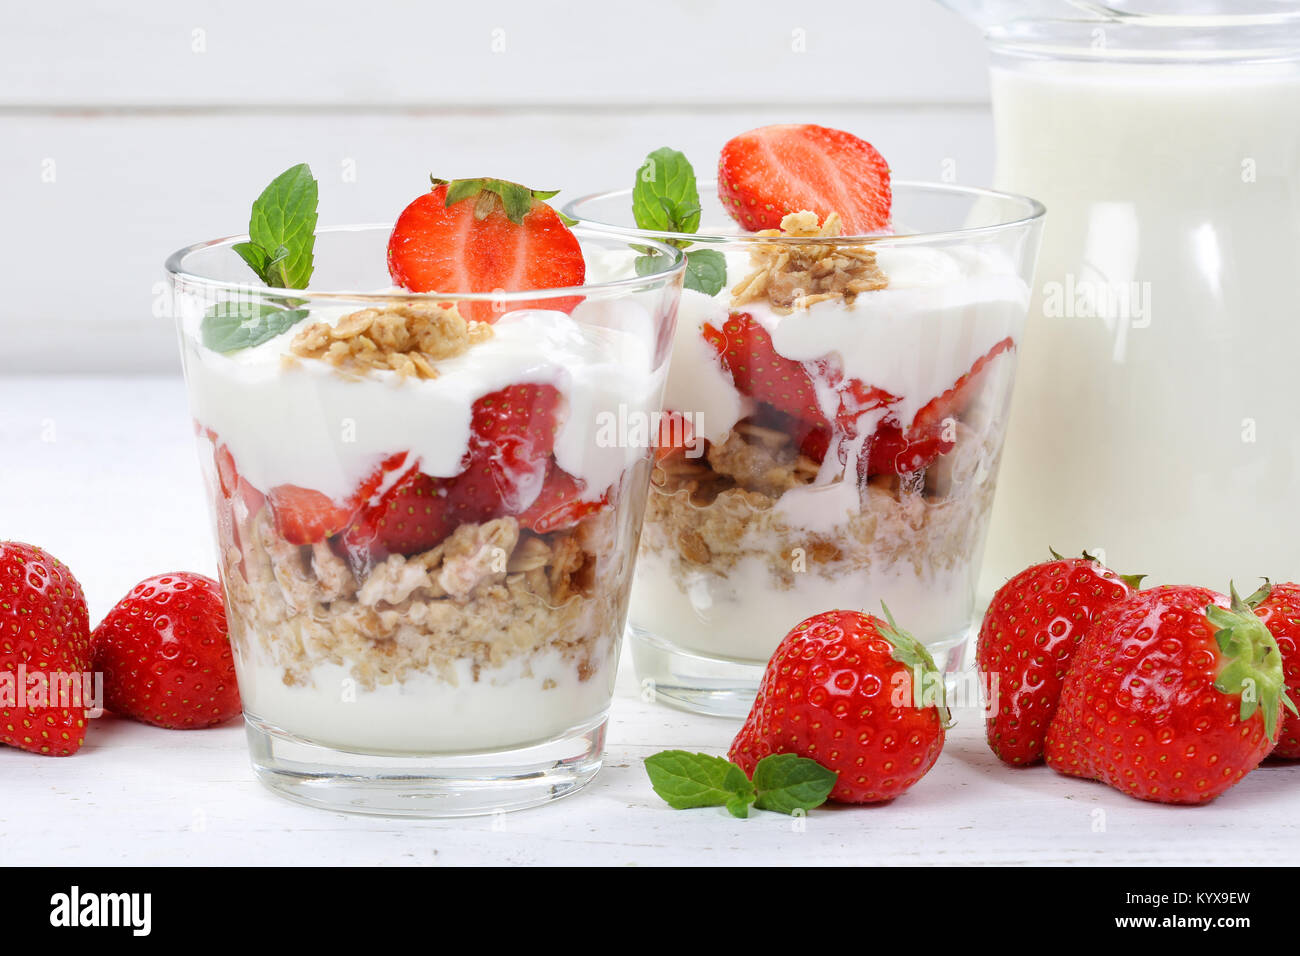 Strawberry yogurt yoghurt strawberries fruits breakfast food Stock Photo